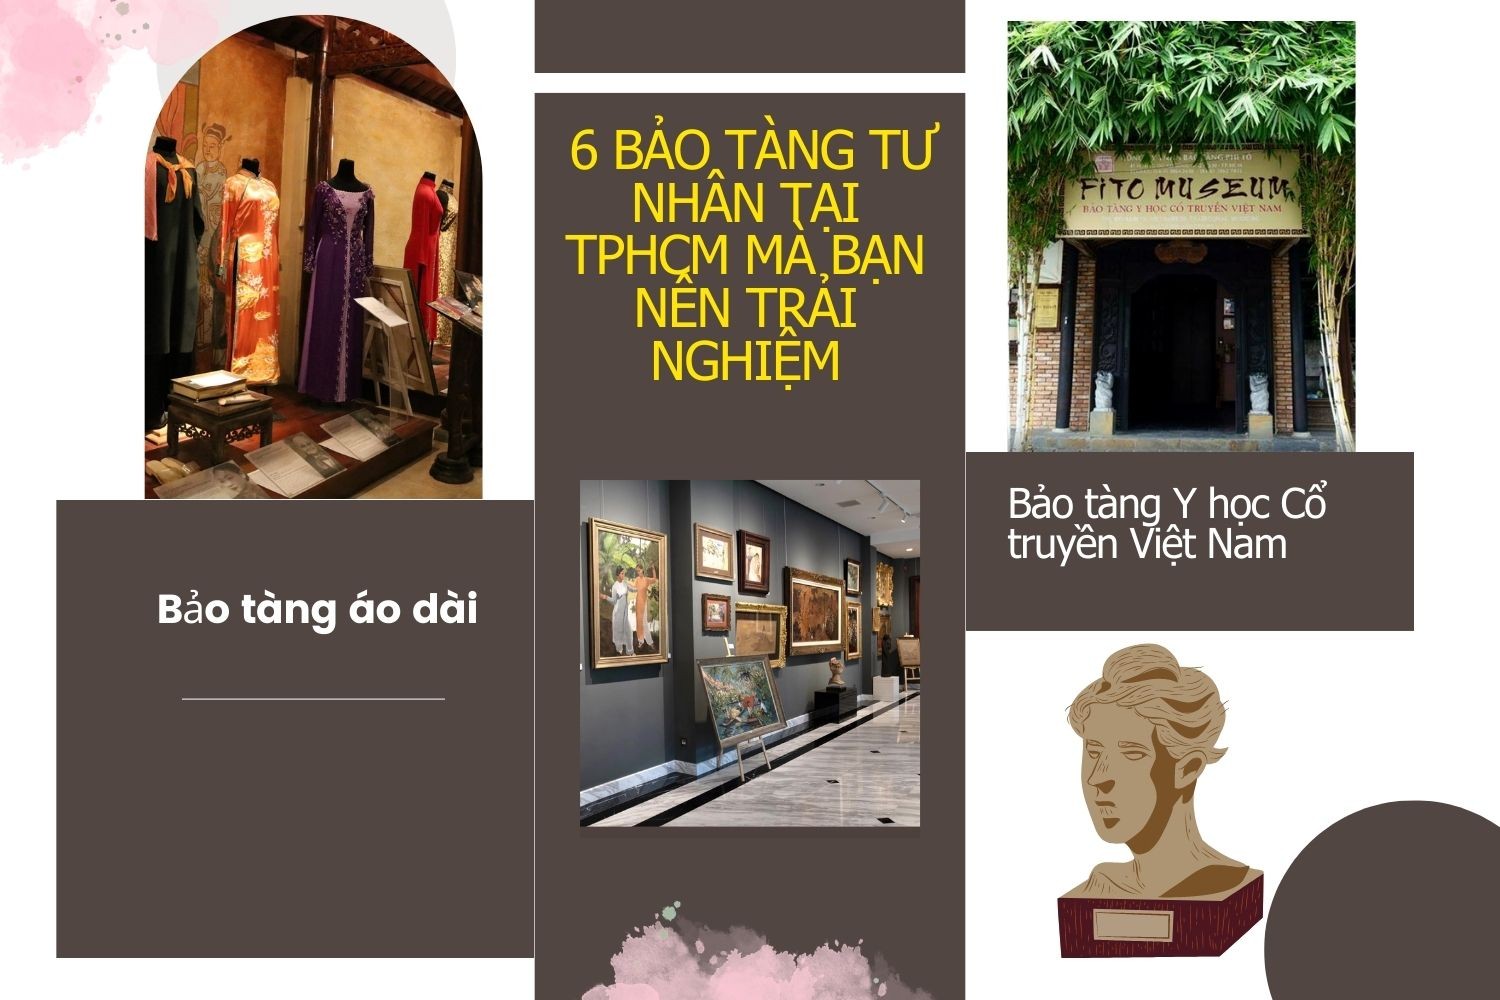 6 bảo tàng tư nhân tại Thành phố Hồ Chí Minh mà bạn nên ghé thăm một lần